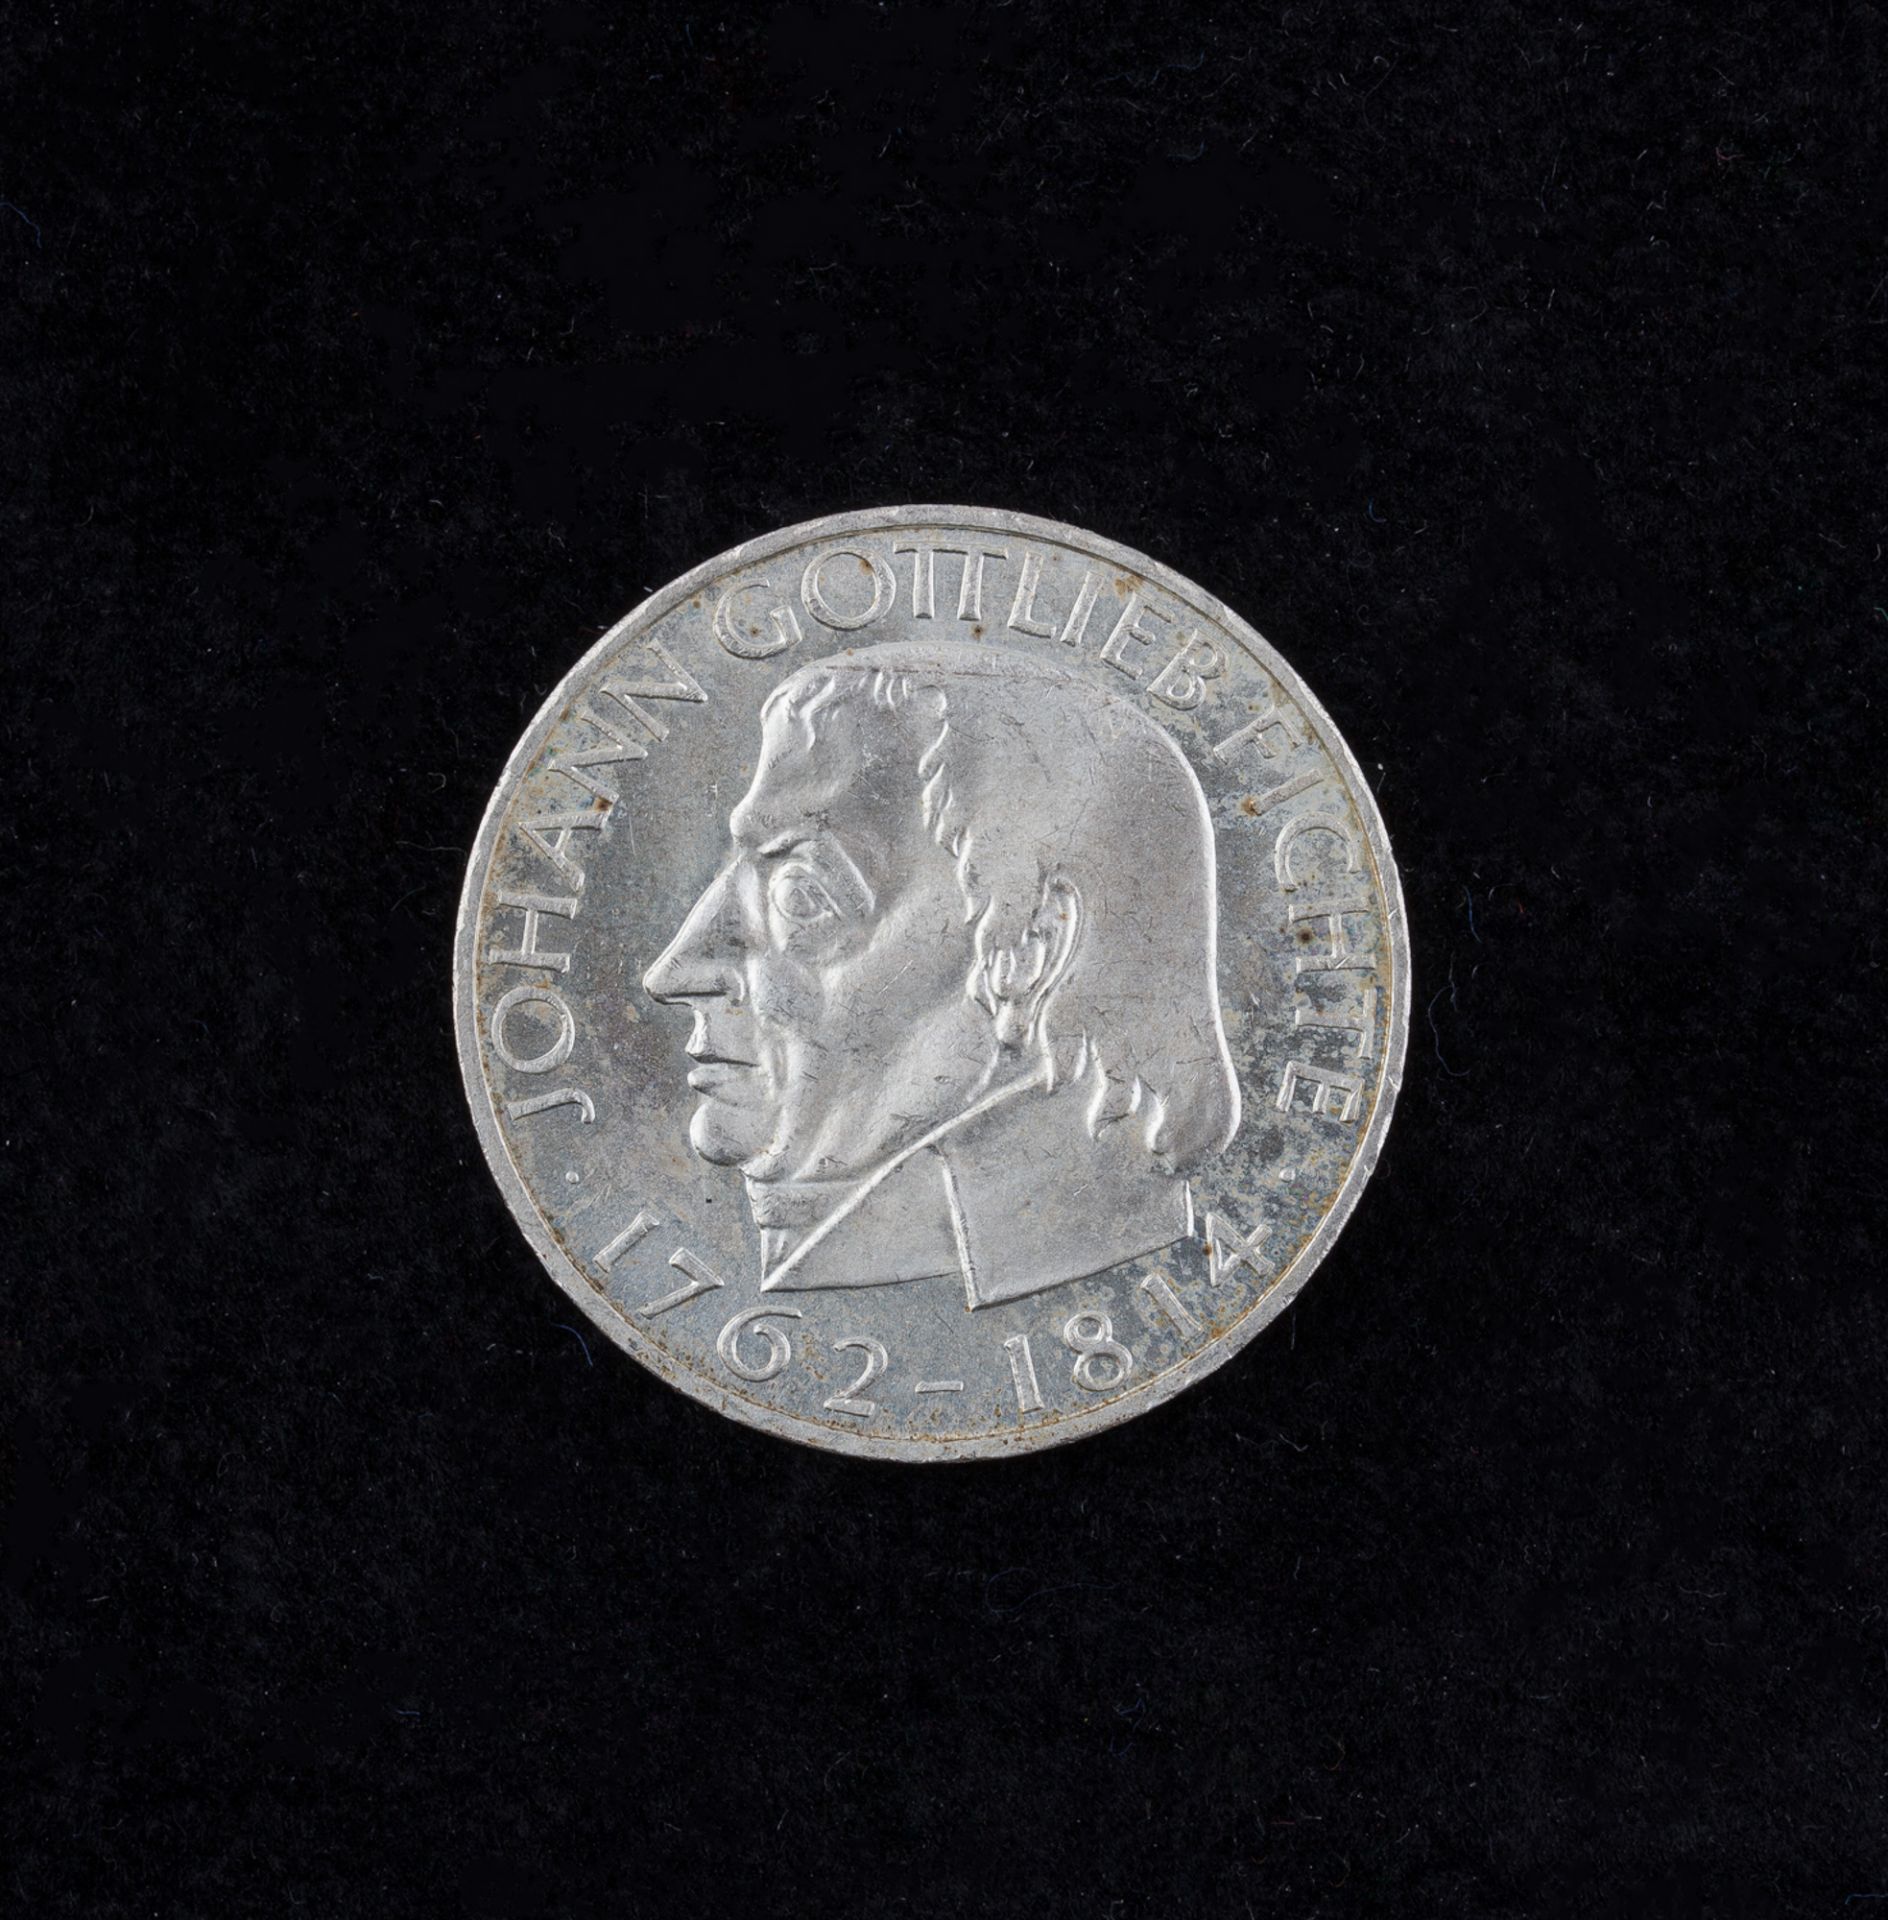 5 Deutsche Mark, 1964 J, Johann Gottlieb Fichte - Image 2 of 2